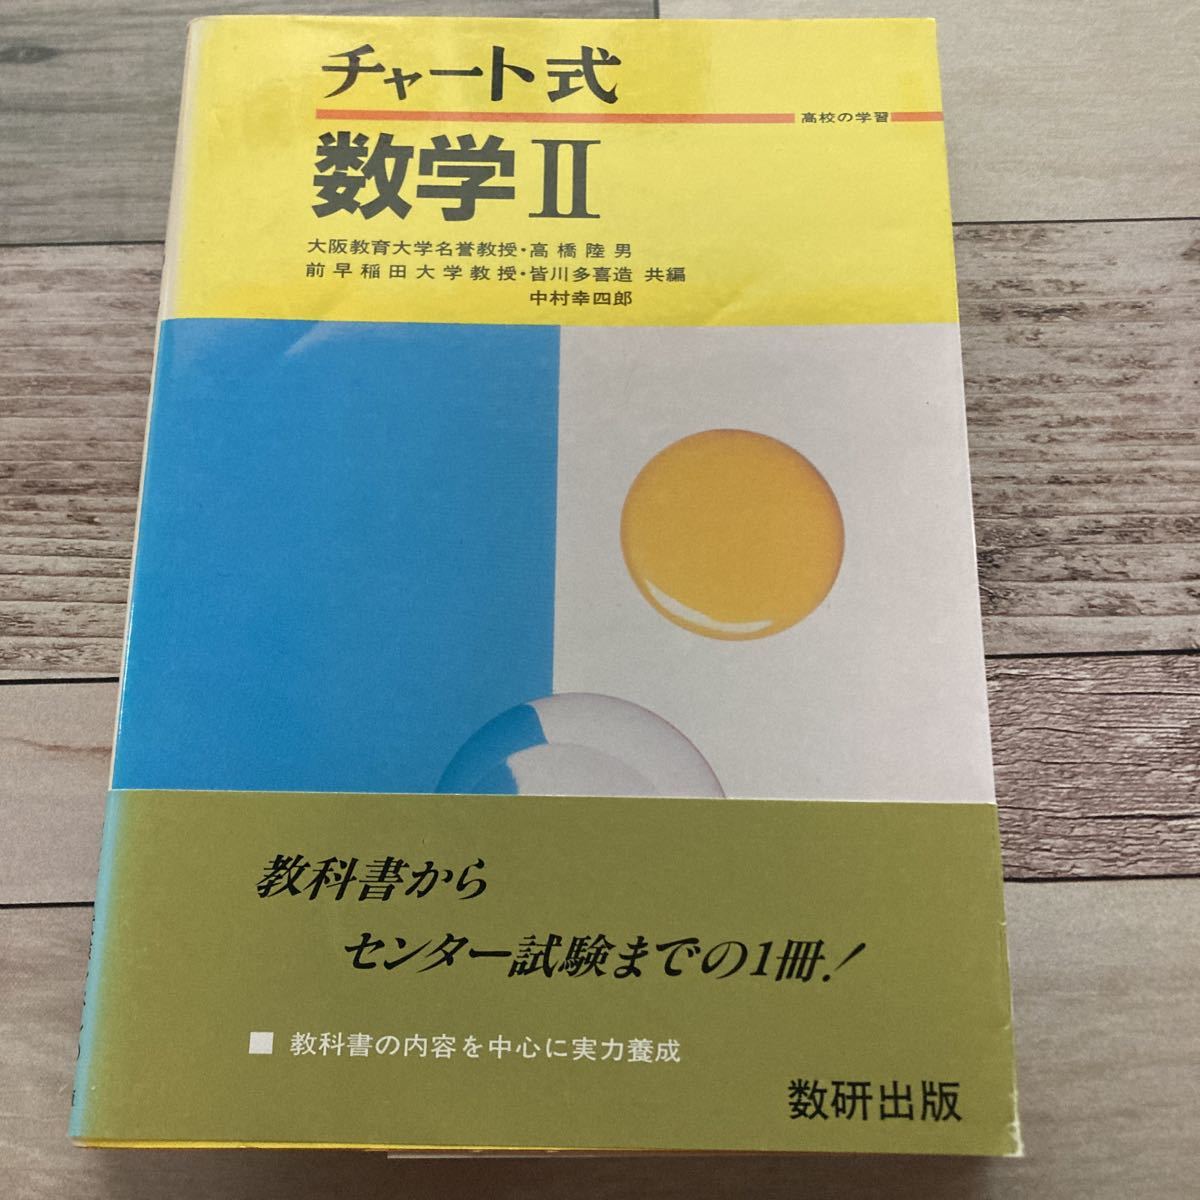 数学 II (チャート式) 高橋陸男 (著) 出版社 数研出版_画像1